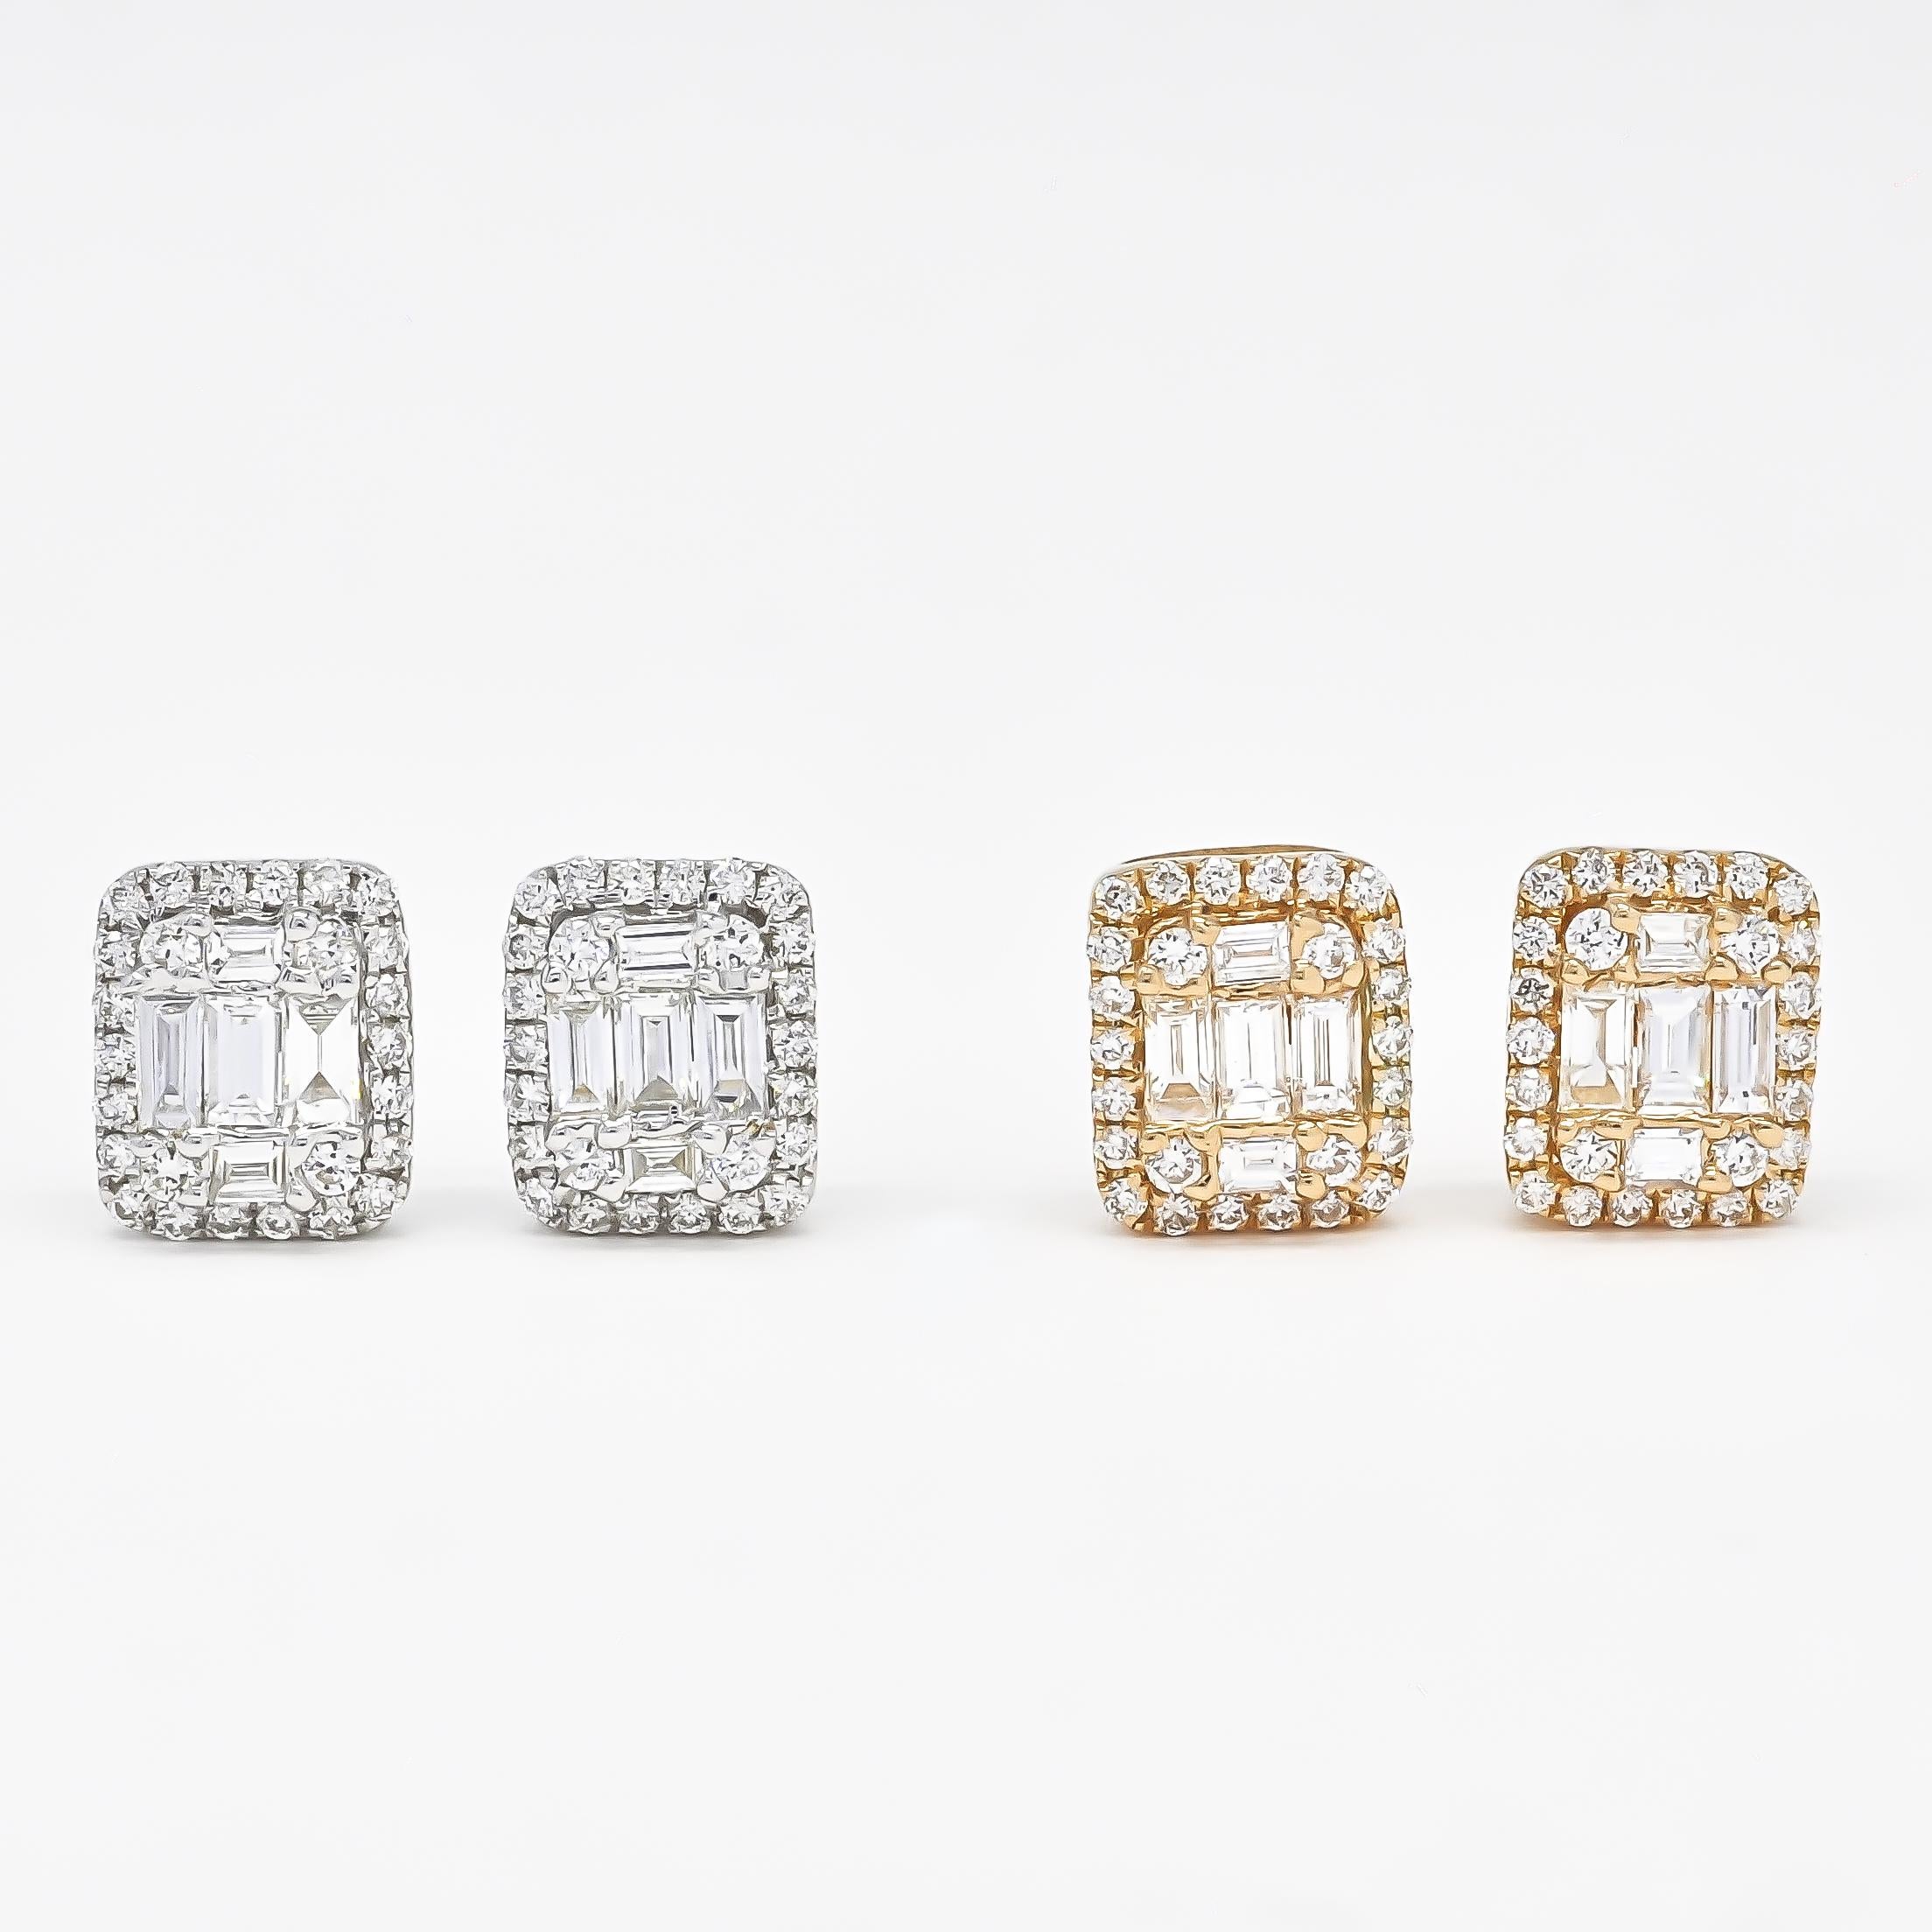 Erleben Sie die Eleganz und Anmut unserer 18KT Rose Gold natürlichen Diamanten Illusion Halo Cluster Emerald Stud Earring. Lassen Sie sich von diesen bezaubernden Ohrringen verzaubern und lassen Sie sie Ihren einzigartigen Stil und Ihre